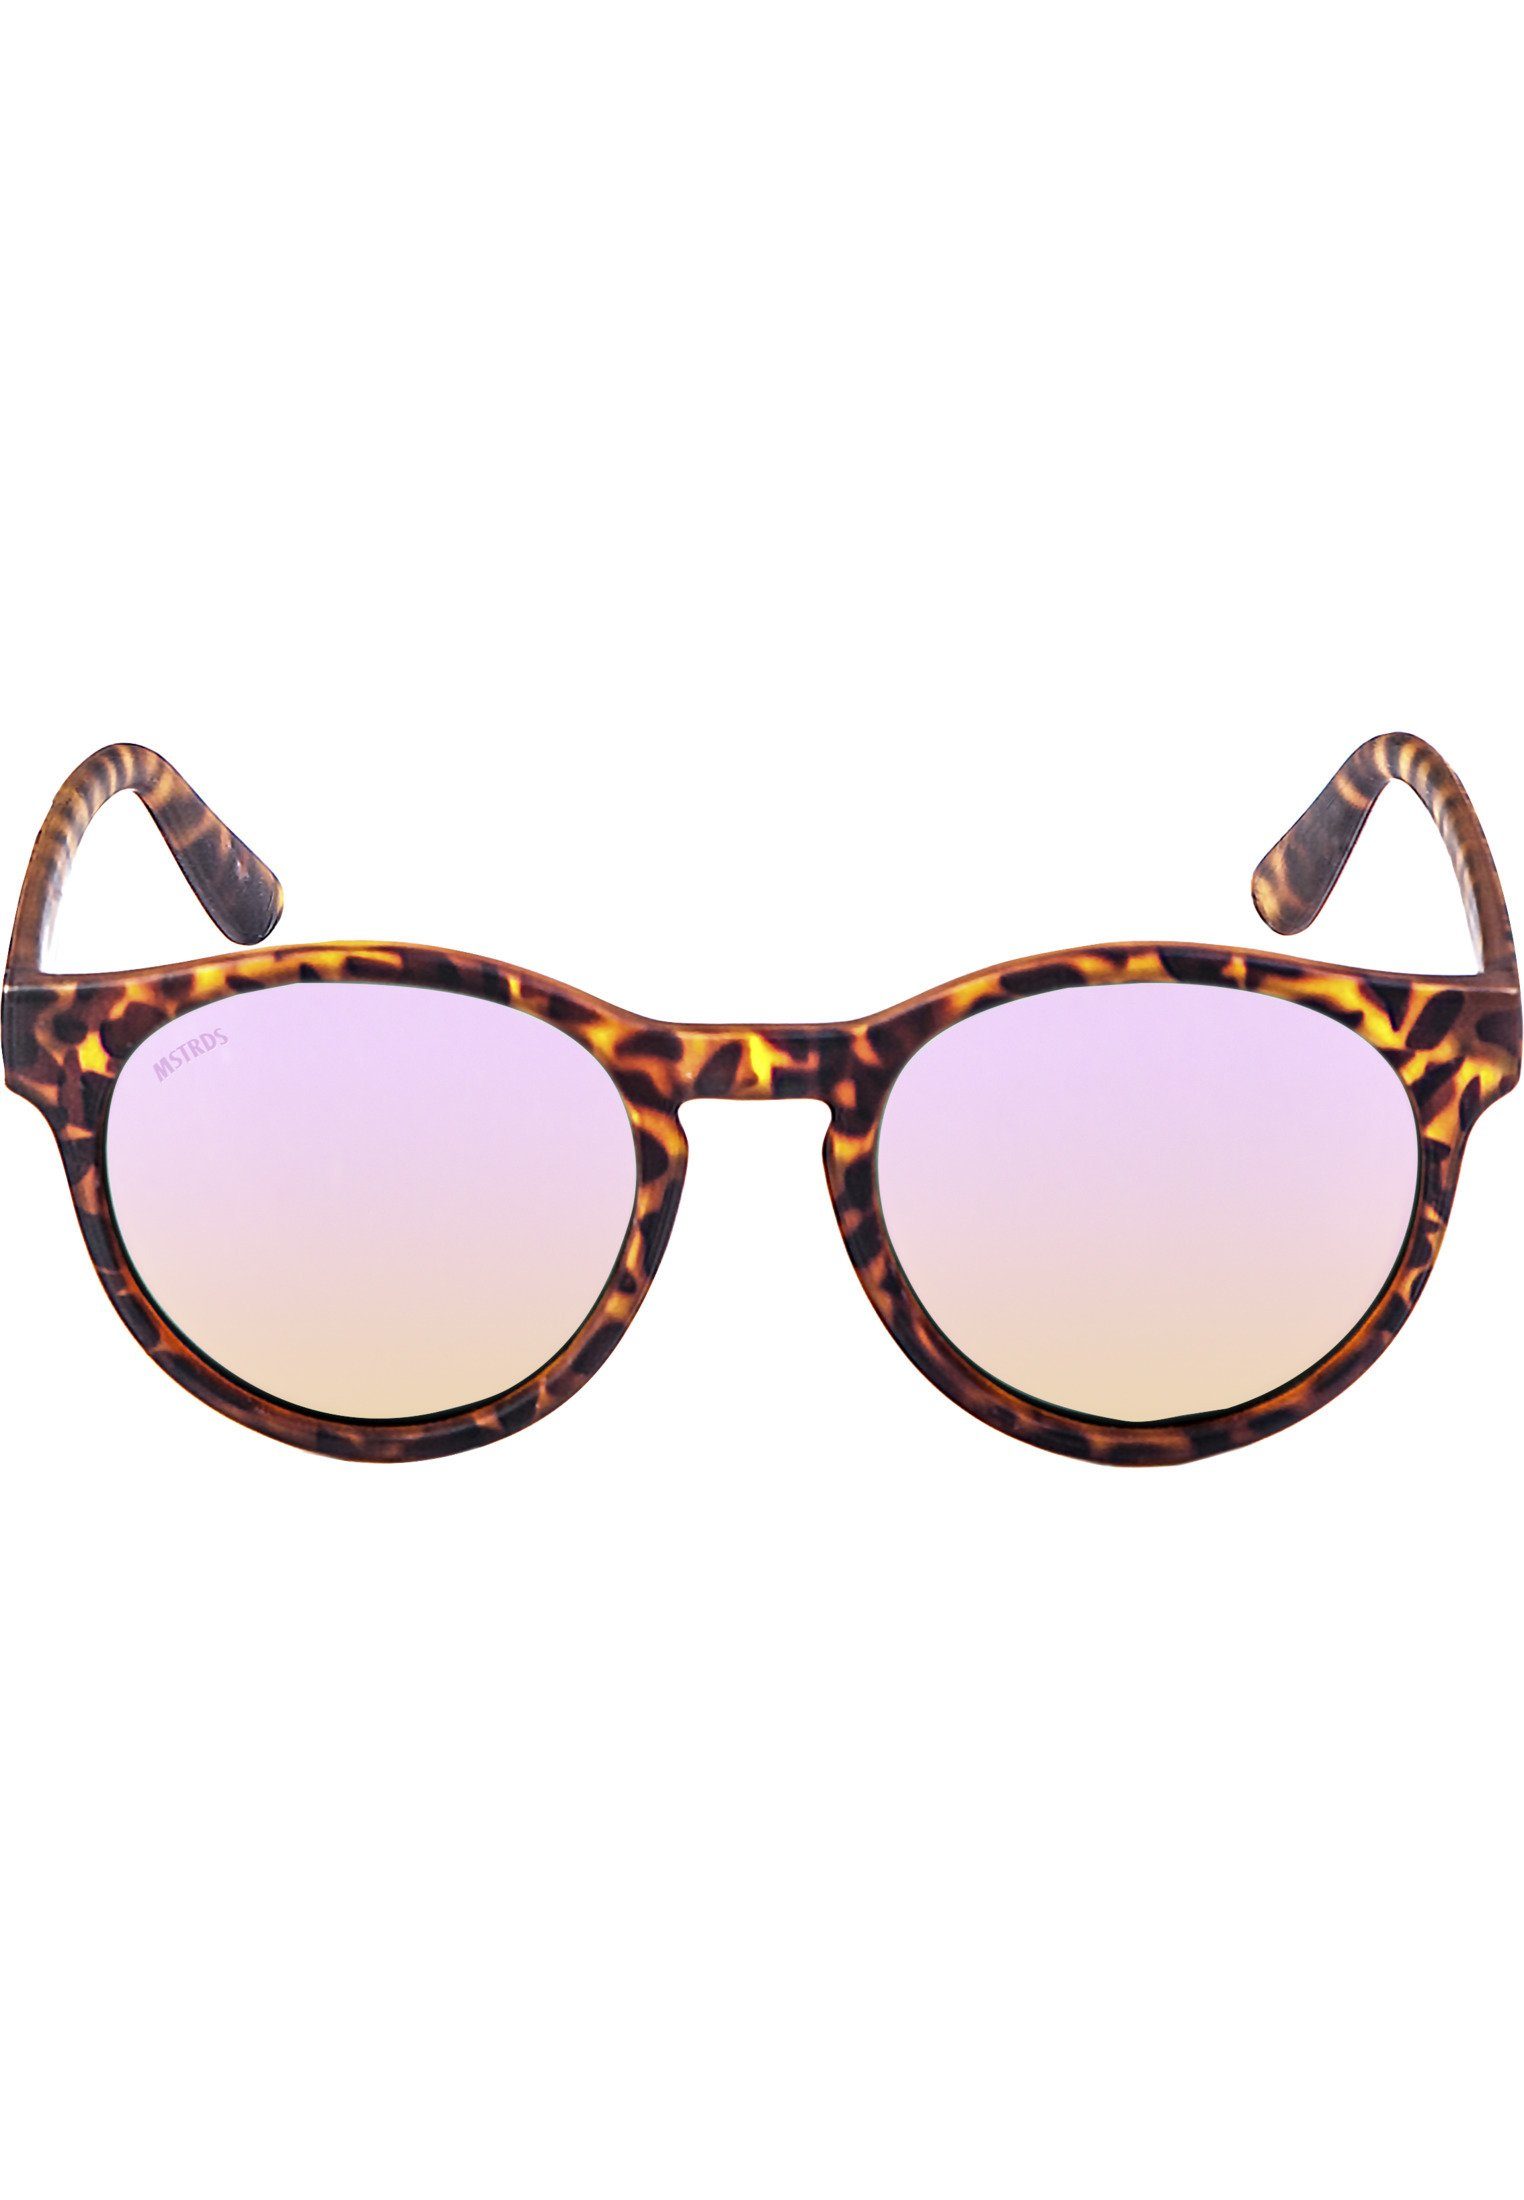 MSTRDS Sonnenbrille Accessoires Sunglasses Sunrise havanna/rosé